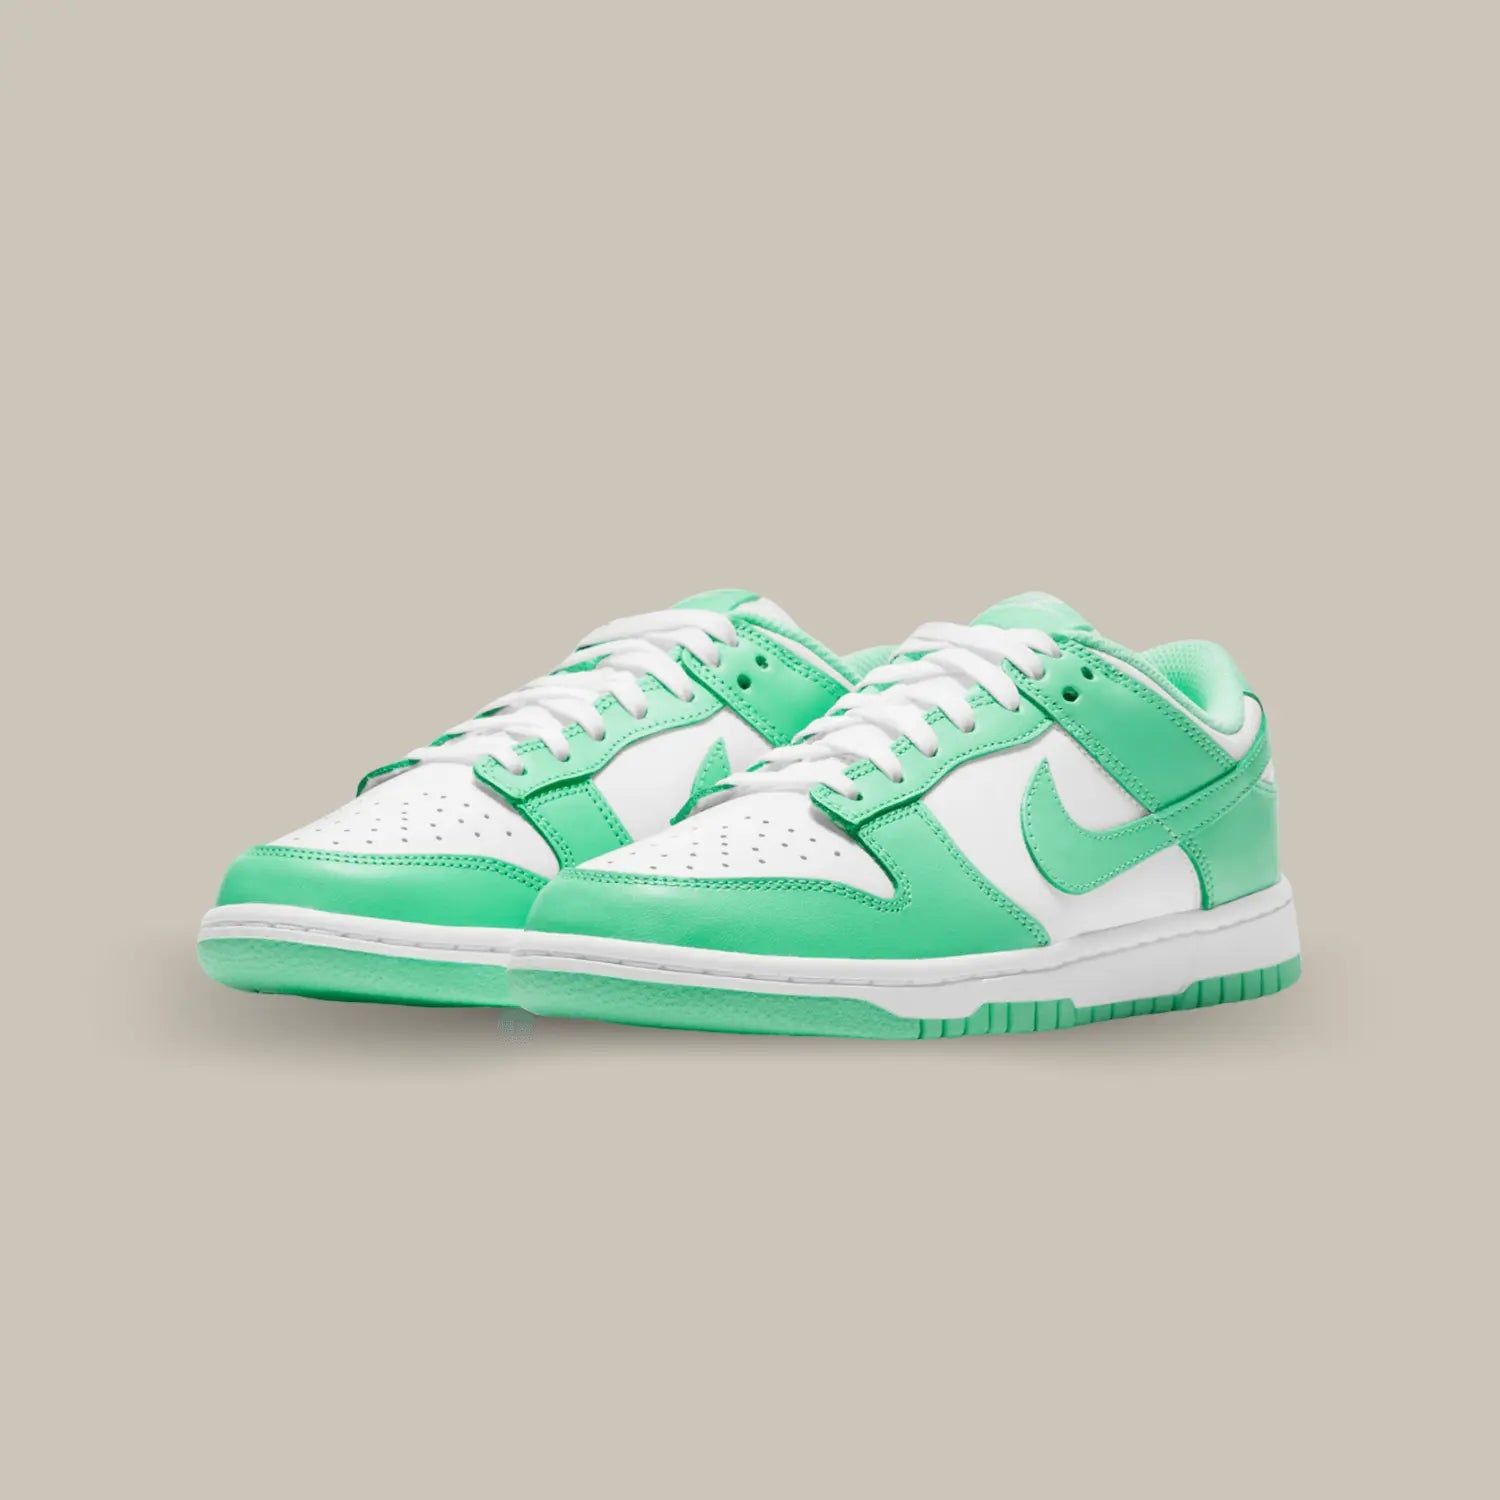 La Nike Dunk Low Green Glow possède une base en cuir blanc avec des empiècements en cuir vert menthe. On retrouve un swoosh de la même couleur pour trouver un équilibre entre le vert et le blanc.